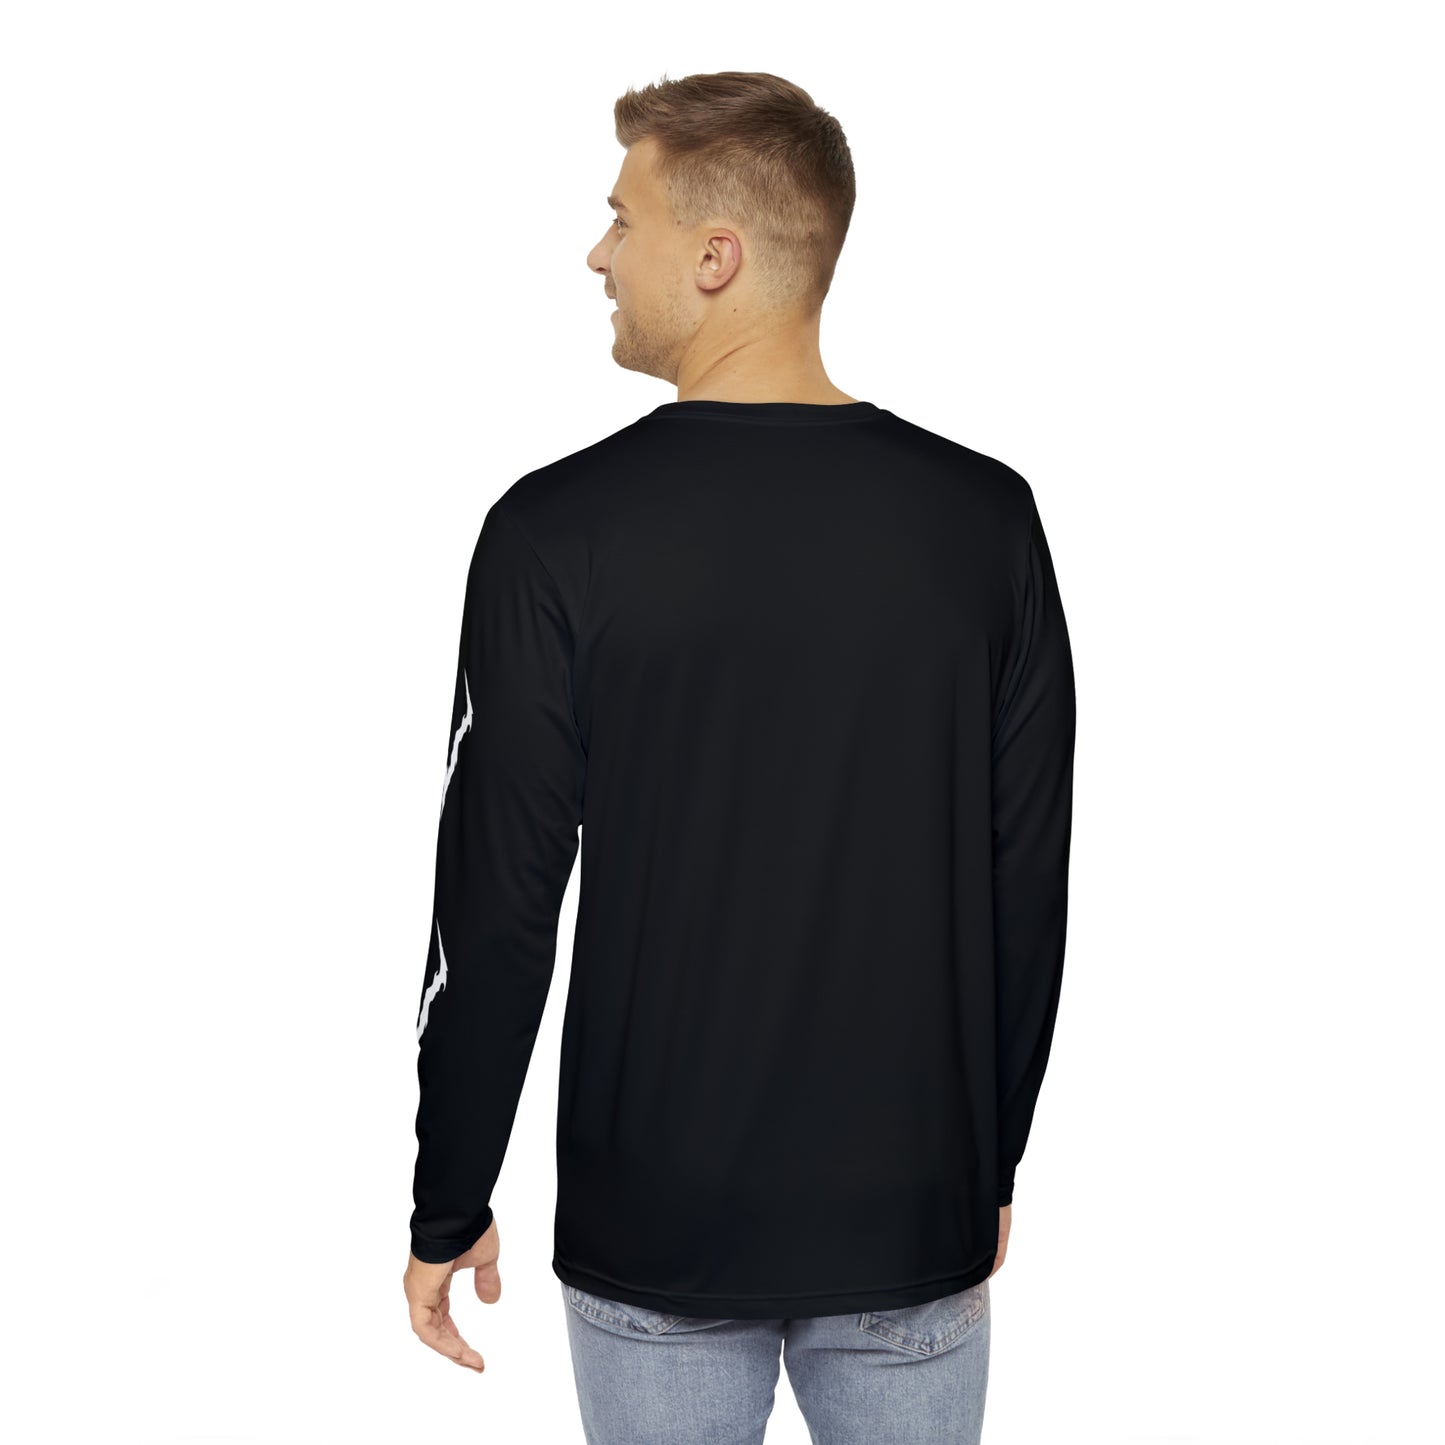 Bovem - Long Sleeve Shirt